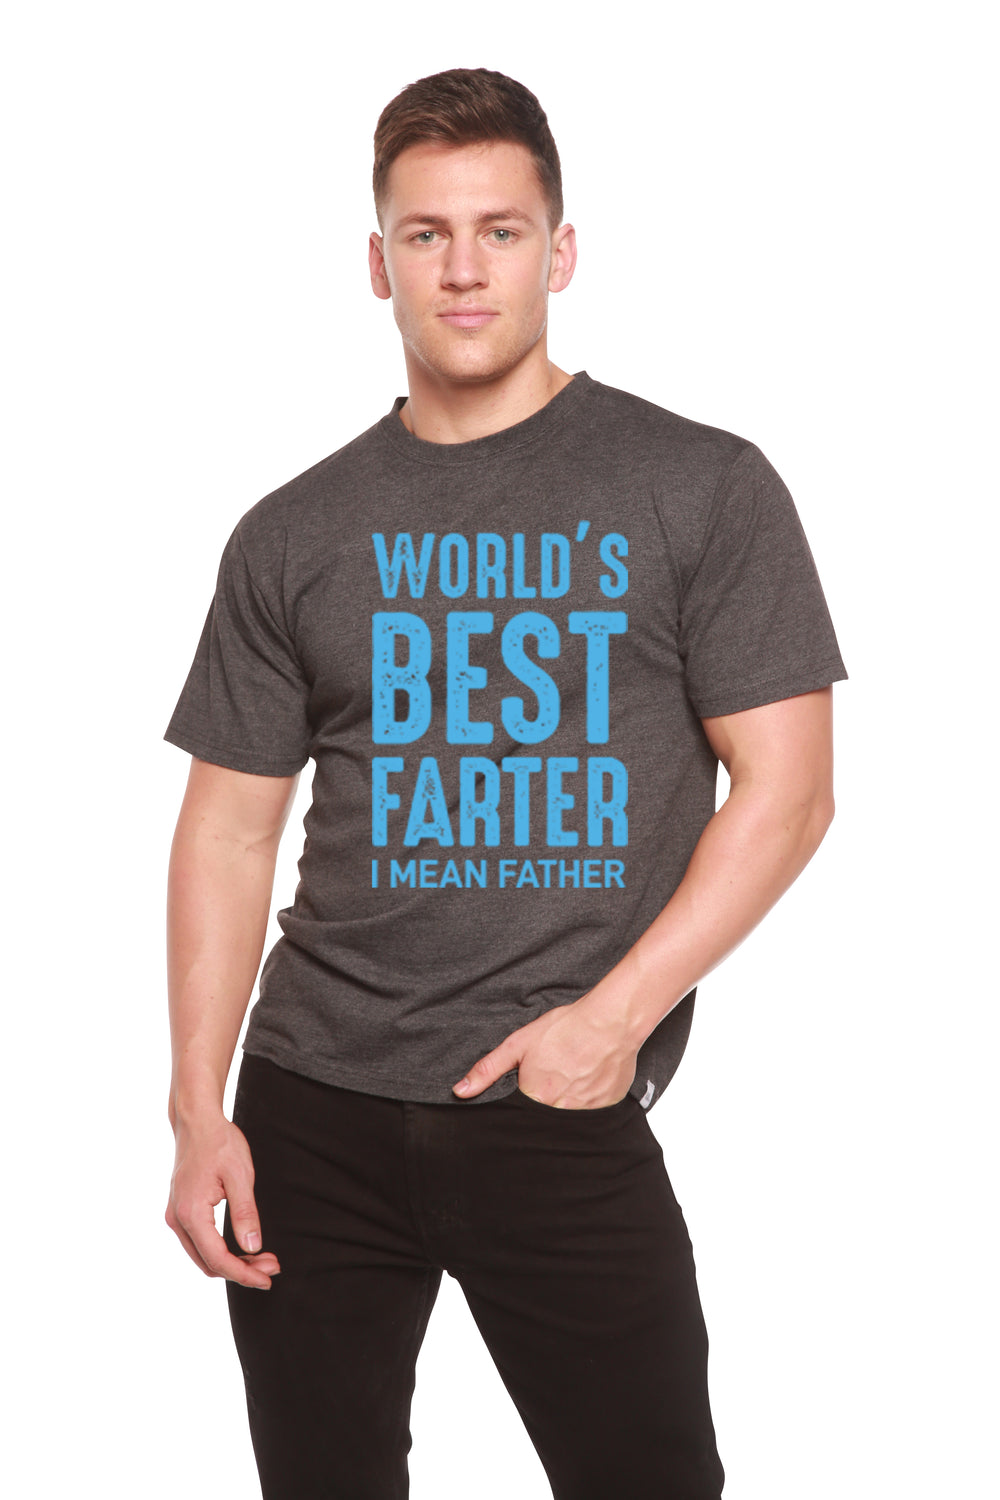 World's Best Farther Men's Bamboo Viscose/Organic Cotton Short Sleeve T-Shirt - Spun Bamboo